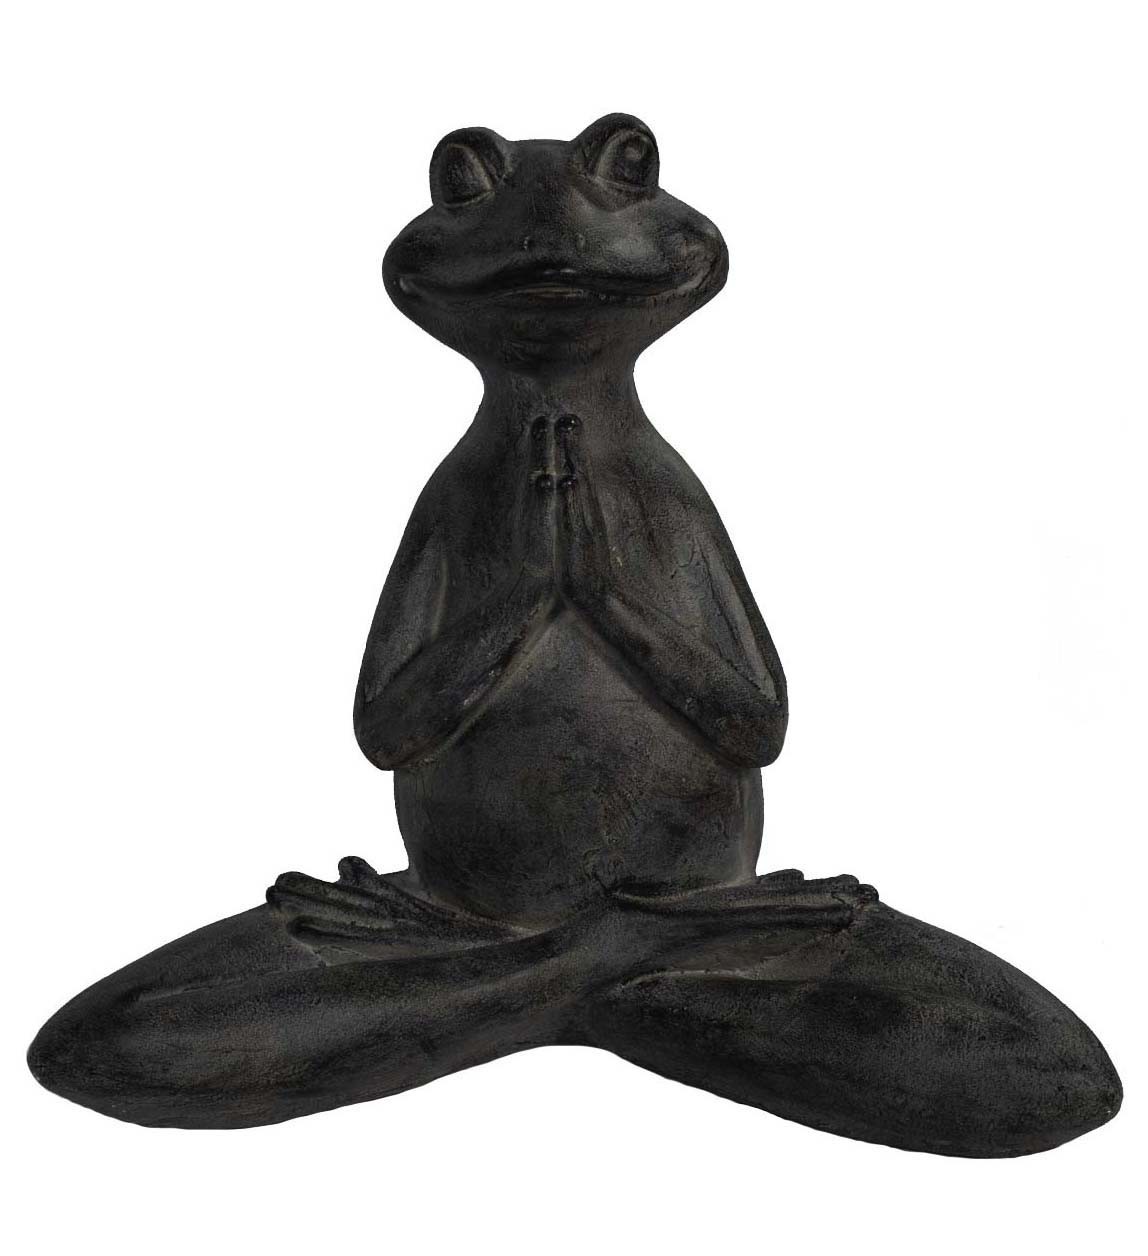 17" Black Zen Frog Indoor Outdoor Statue